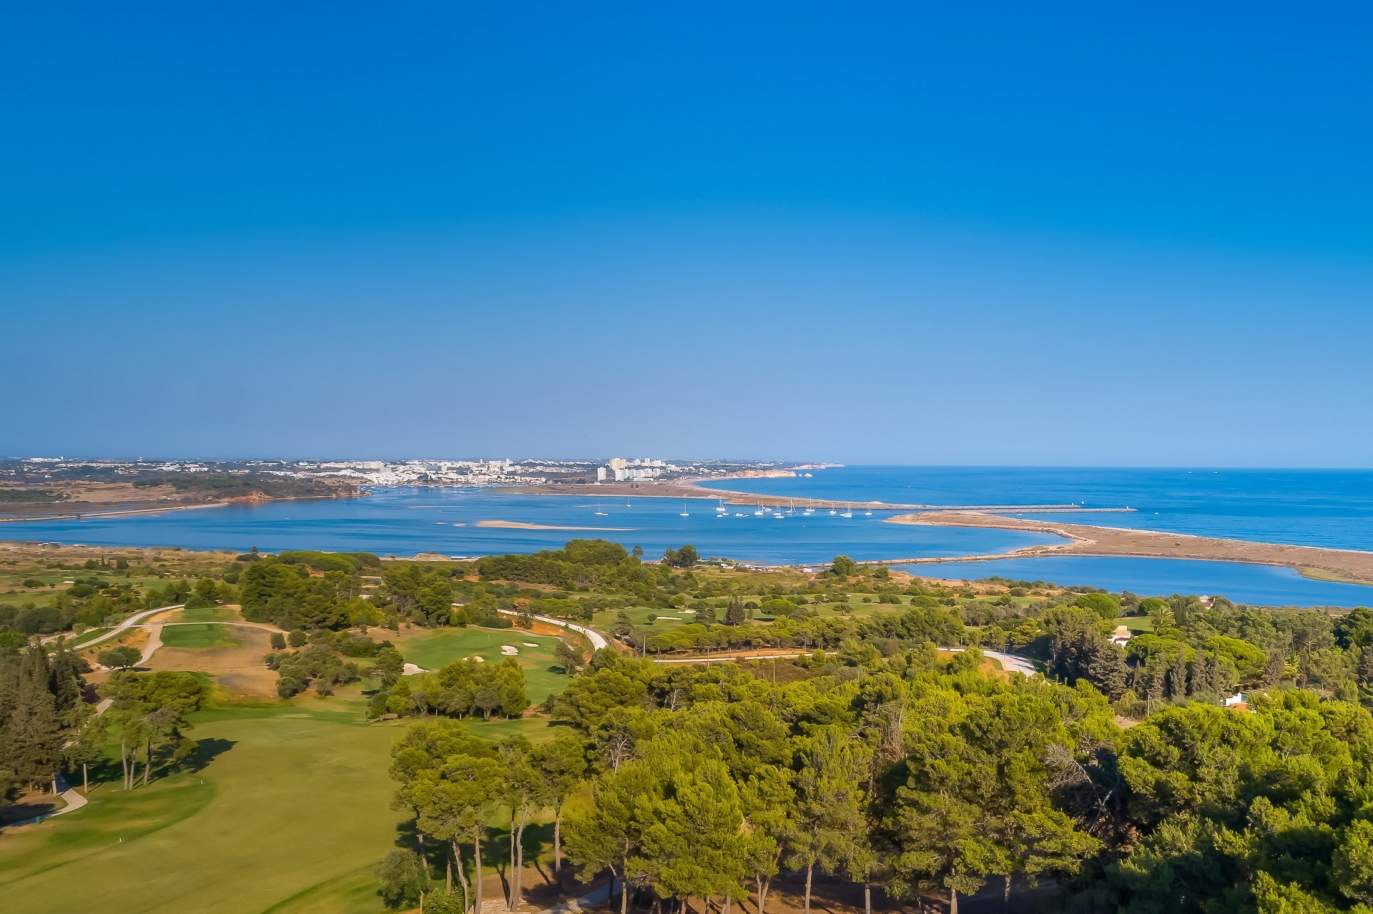 Terrain à vendre dans un complexe de golf, Lagos, Algarve, Portugal_123001